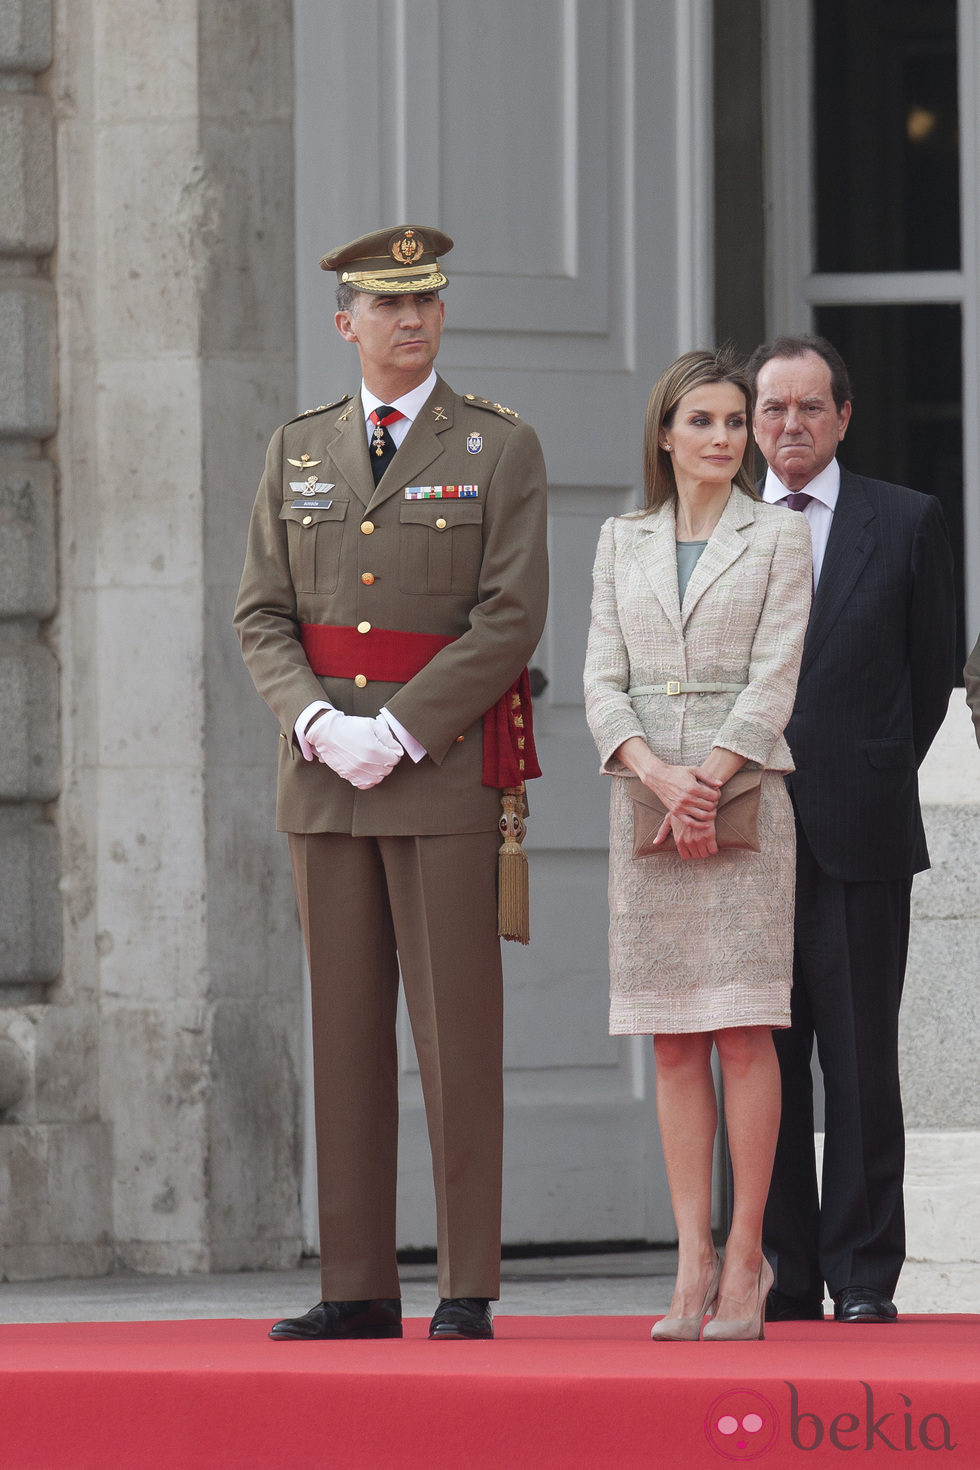 Los Reyes Felipe y Letizia en la Salutación de las Fuerzas Armadas y la Guardia Civil al Rey